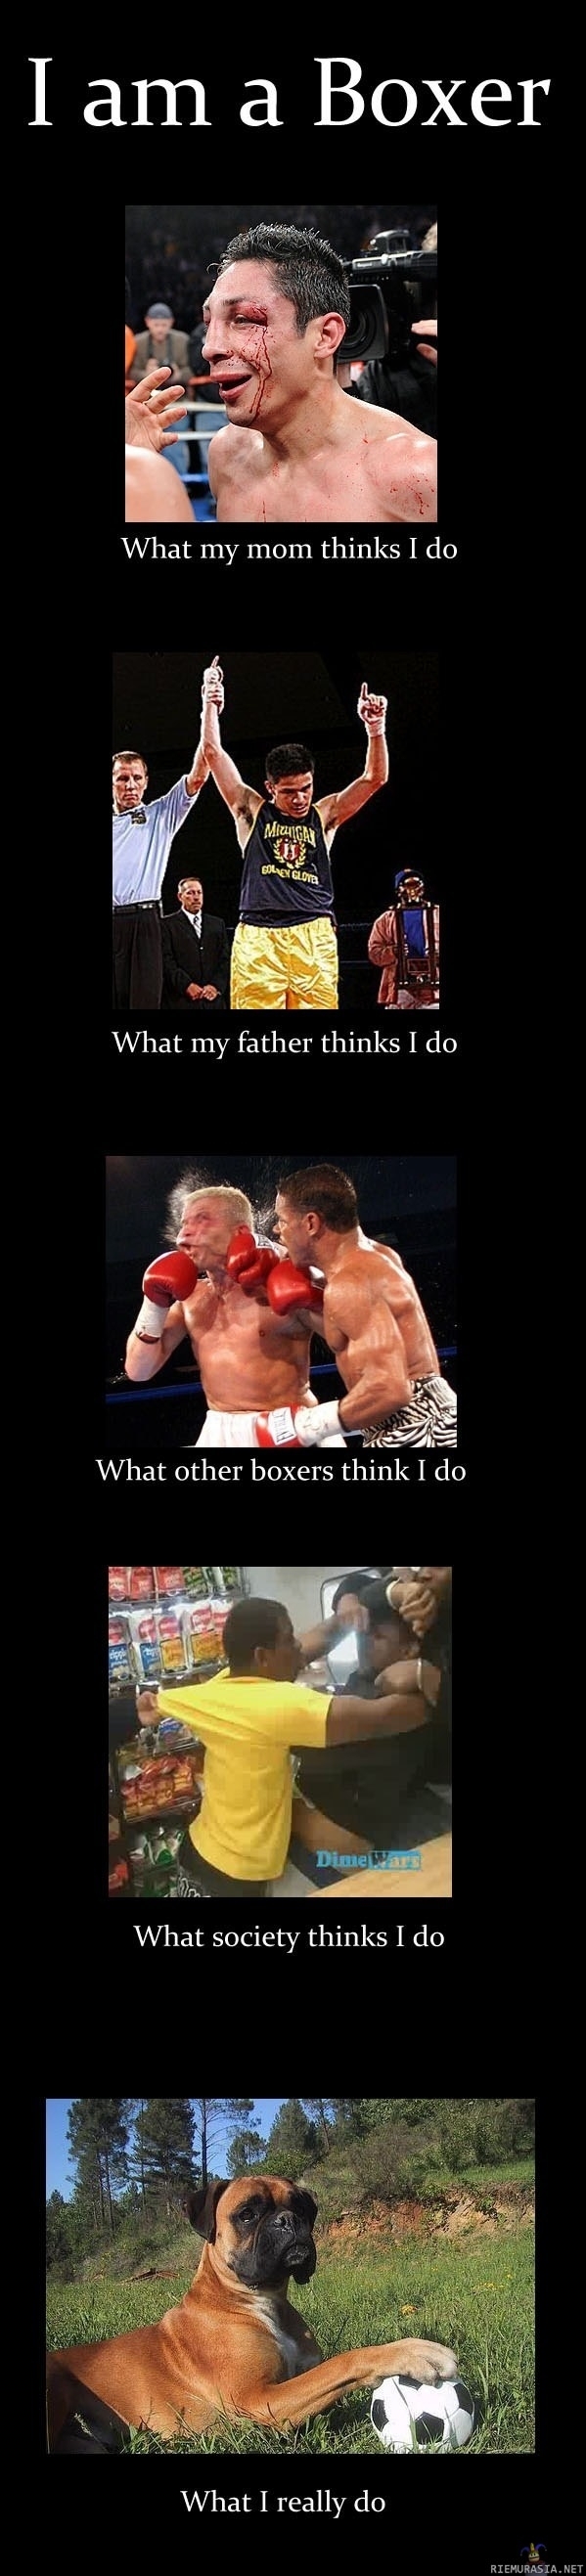 Life as a Boxer